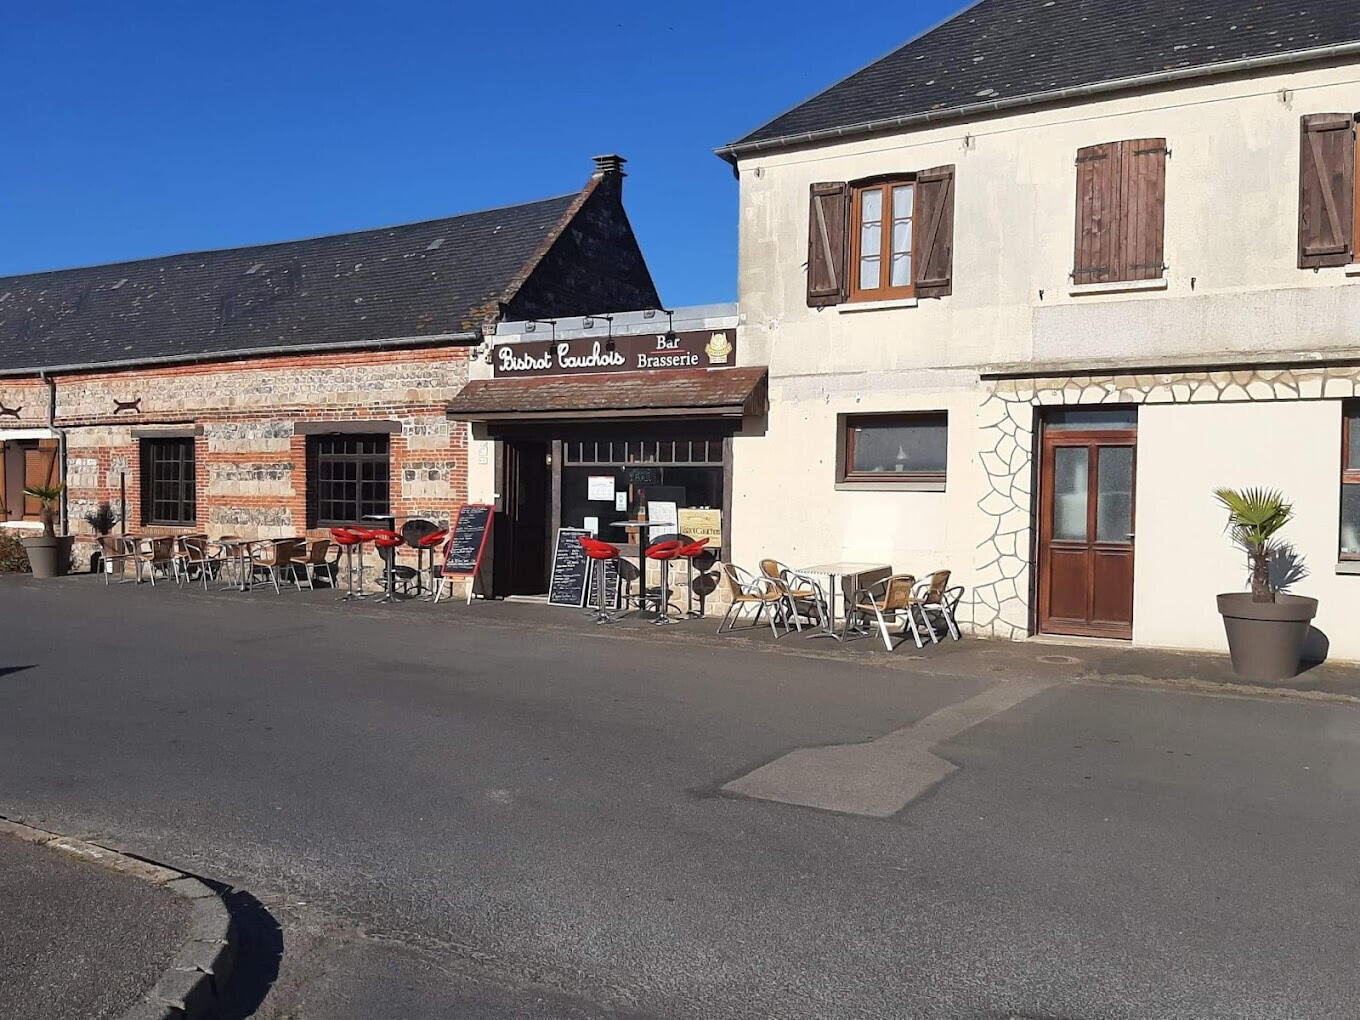 A vendre bar brasserie épicerie Sotteville-Sur-Mer